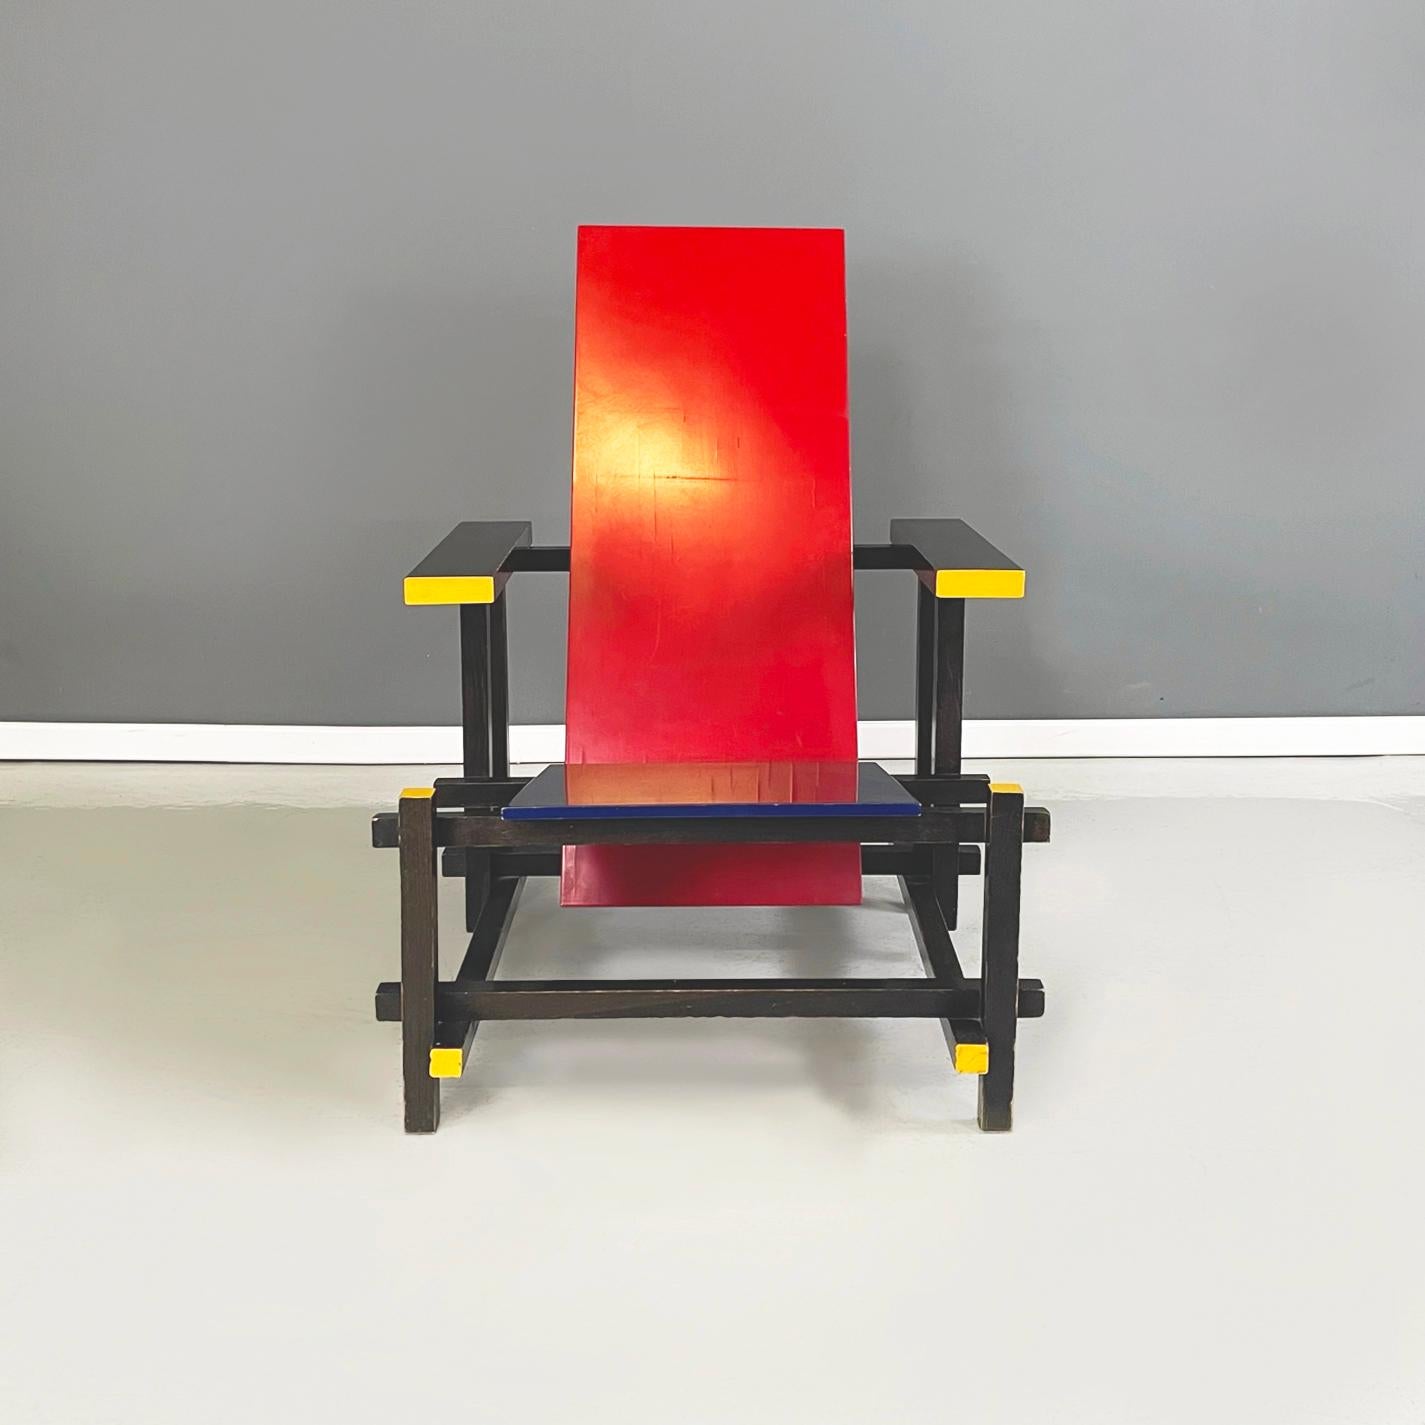 Fauteuil Bauhaus italien rouge et bleu par Gerrit Thomas Rietveld pour Cassina 1971
Fauteuil mod. rouge et bleu entièrement en bois peint en jaune, rouge, bleu et noir. La chaise a une assise inclinée en bois bleu et un dossier incliné en bois